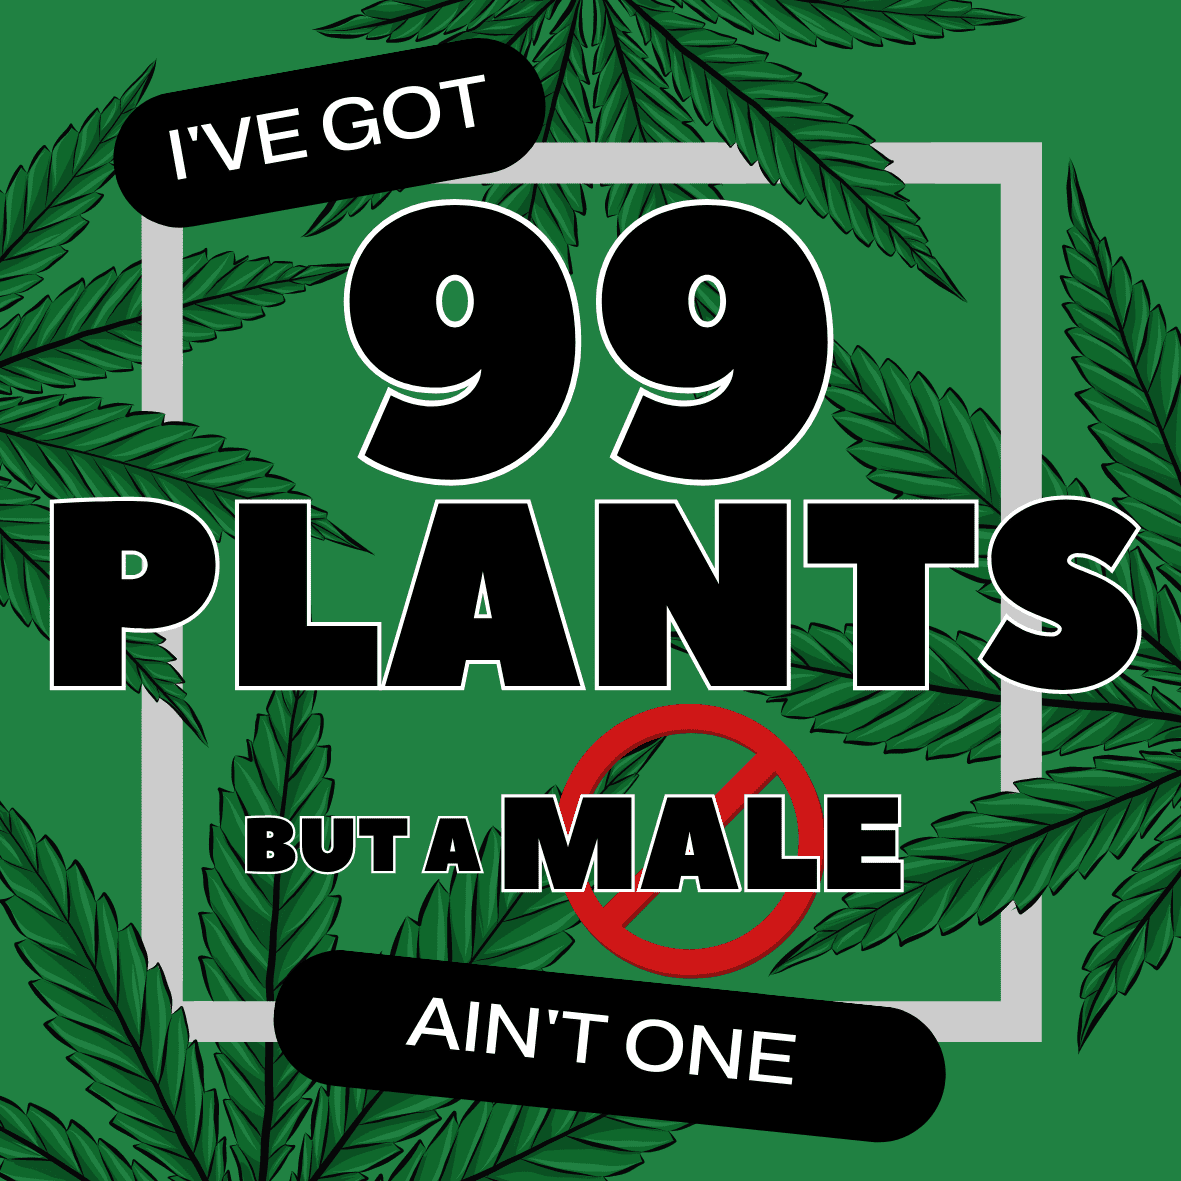 I Got 99 plants